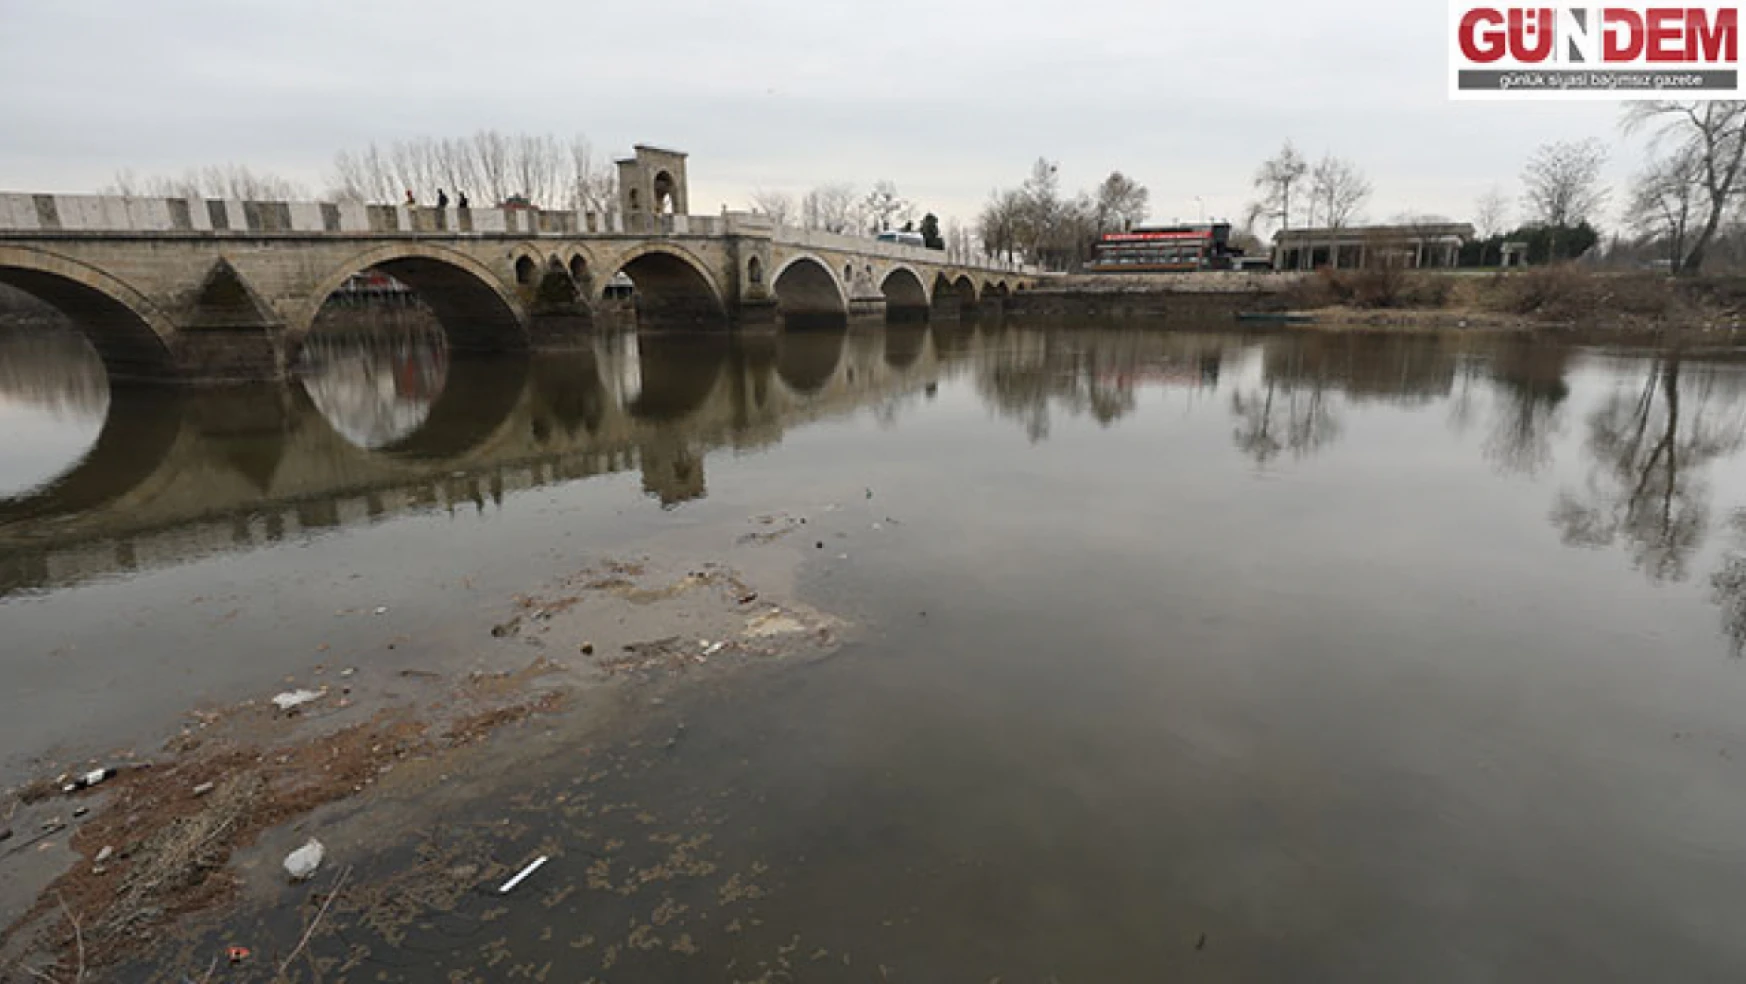 Edirne'deki nehirler kuraklığa bağlı düşük seviyede akıyor